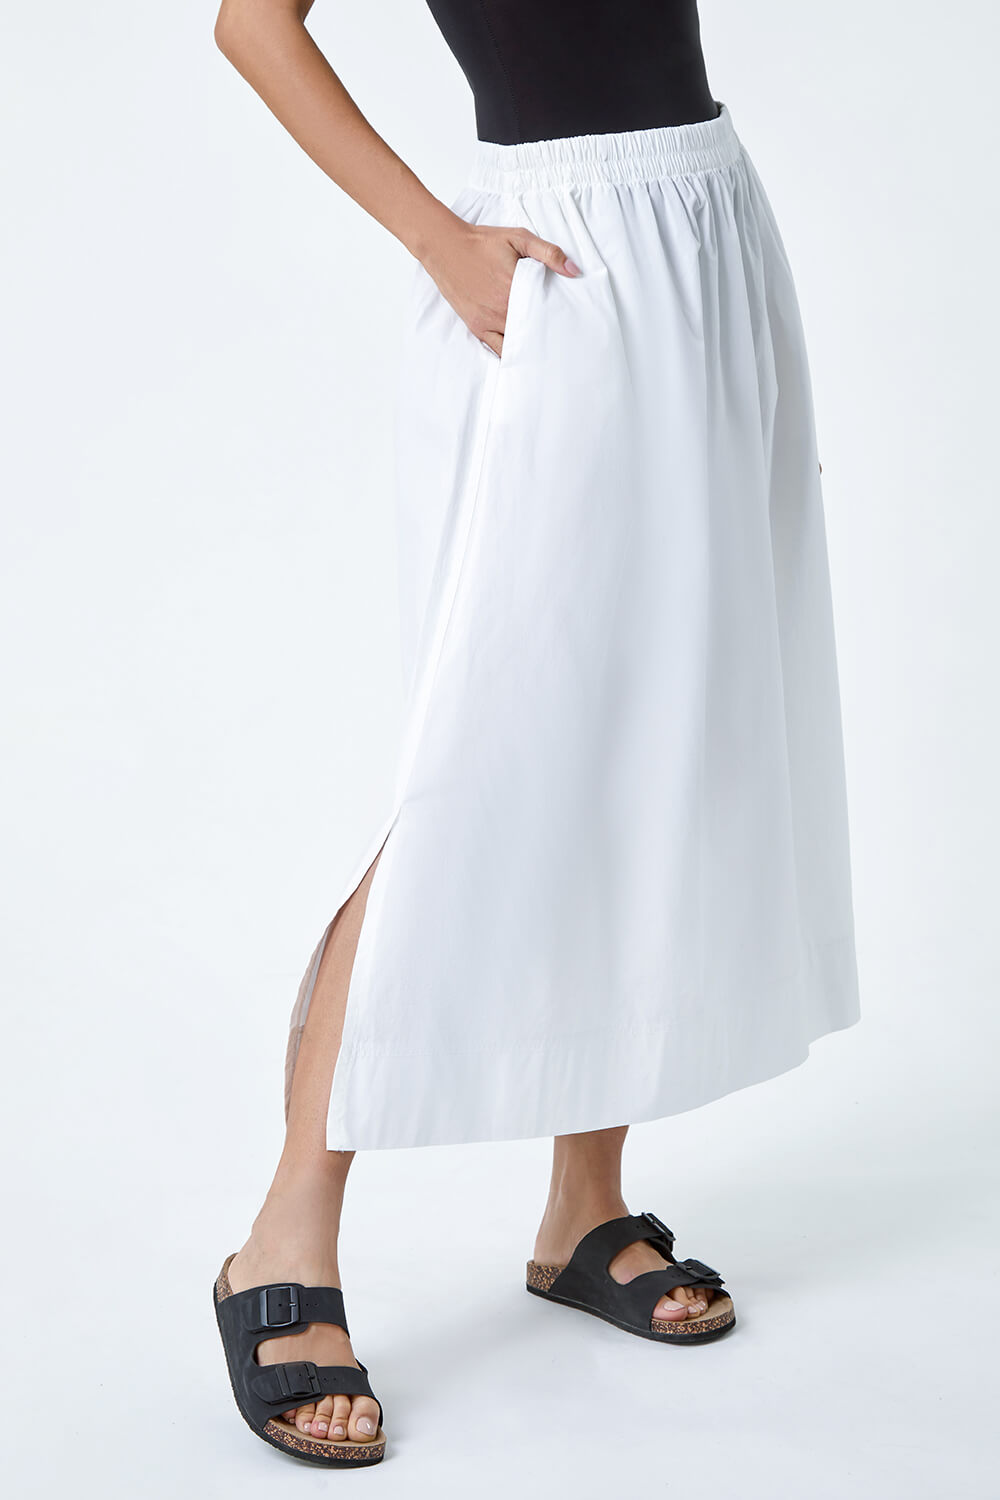 White Cotton Poplin Pocket Skirt, Image 4 of 5